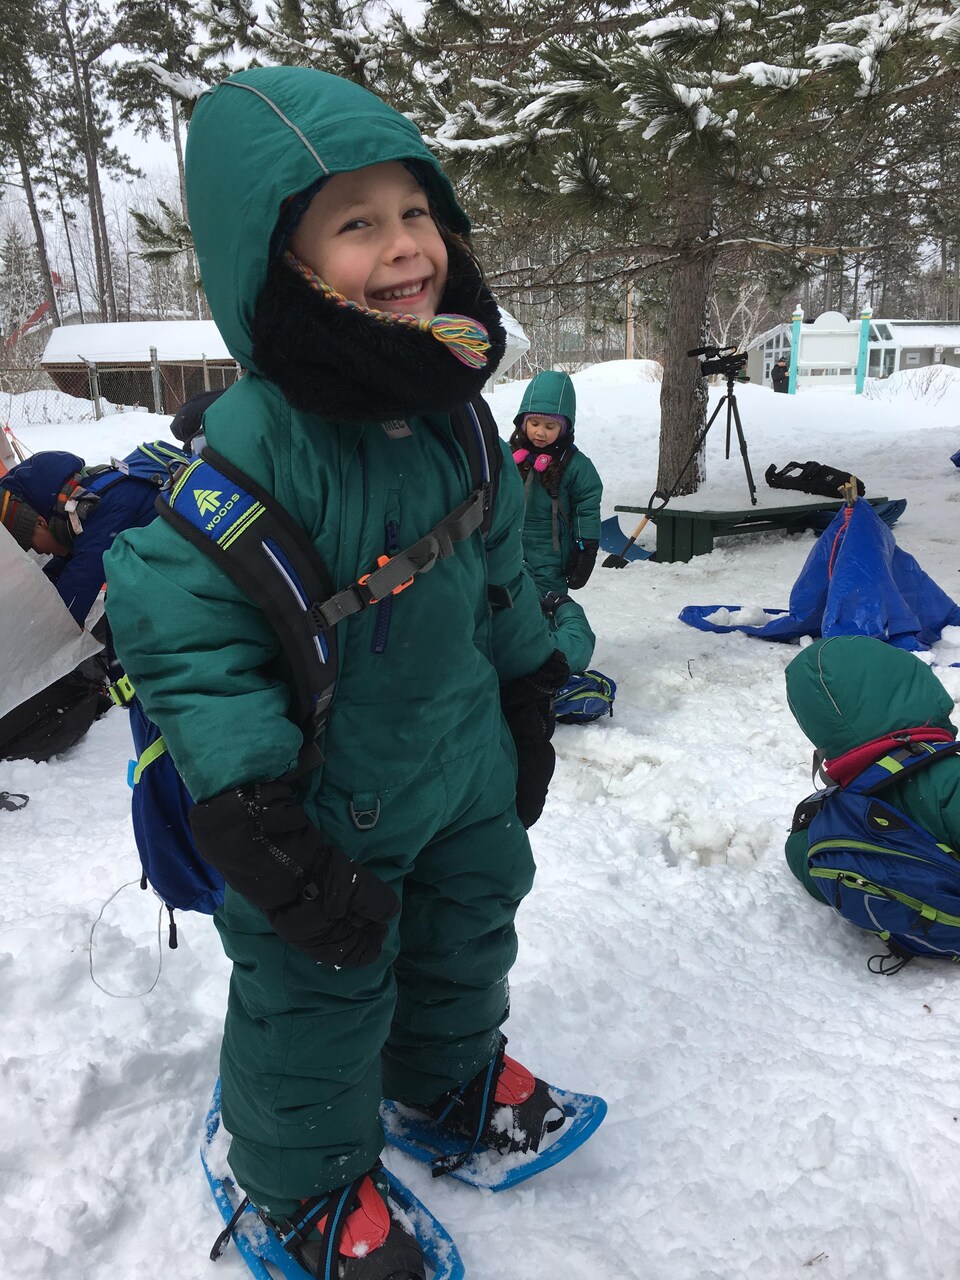 Un enfant de quatre ans en habit de neige émeraude et en raquettes avec un grand sourire, entouré de ses camarades de classe, eux aussi en habit de neige vert émeraude.